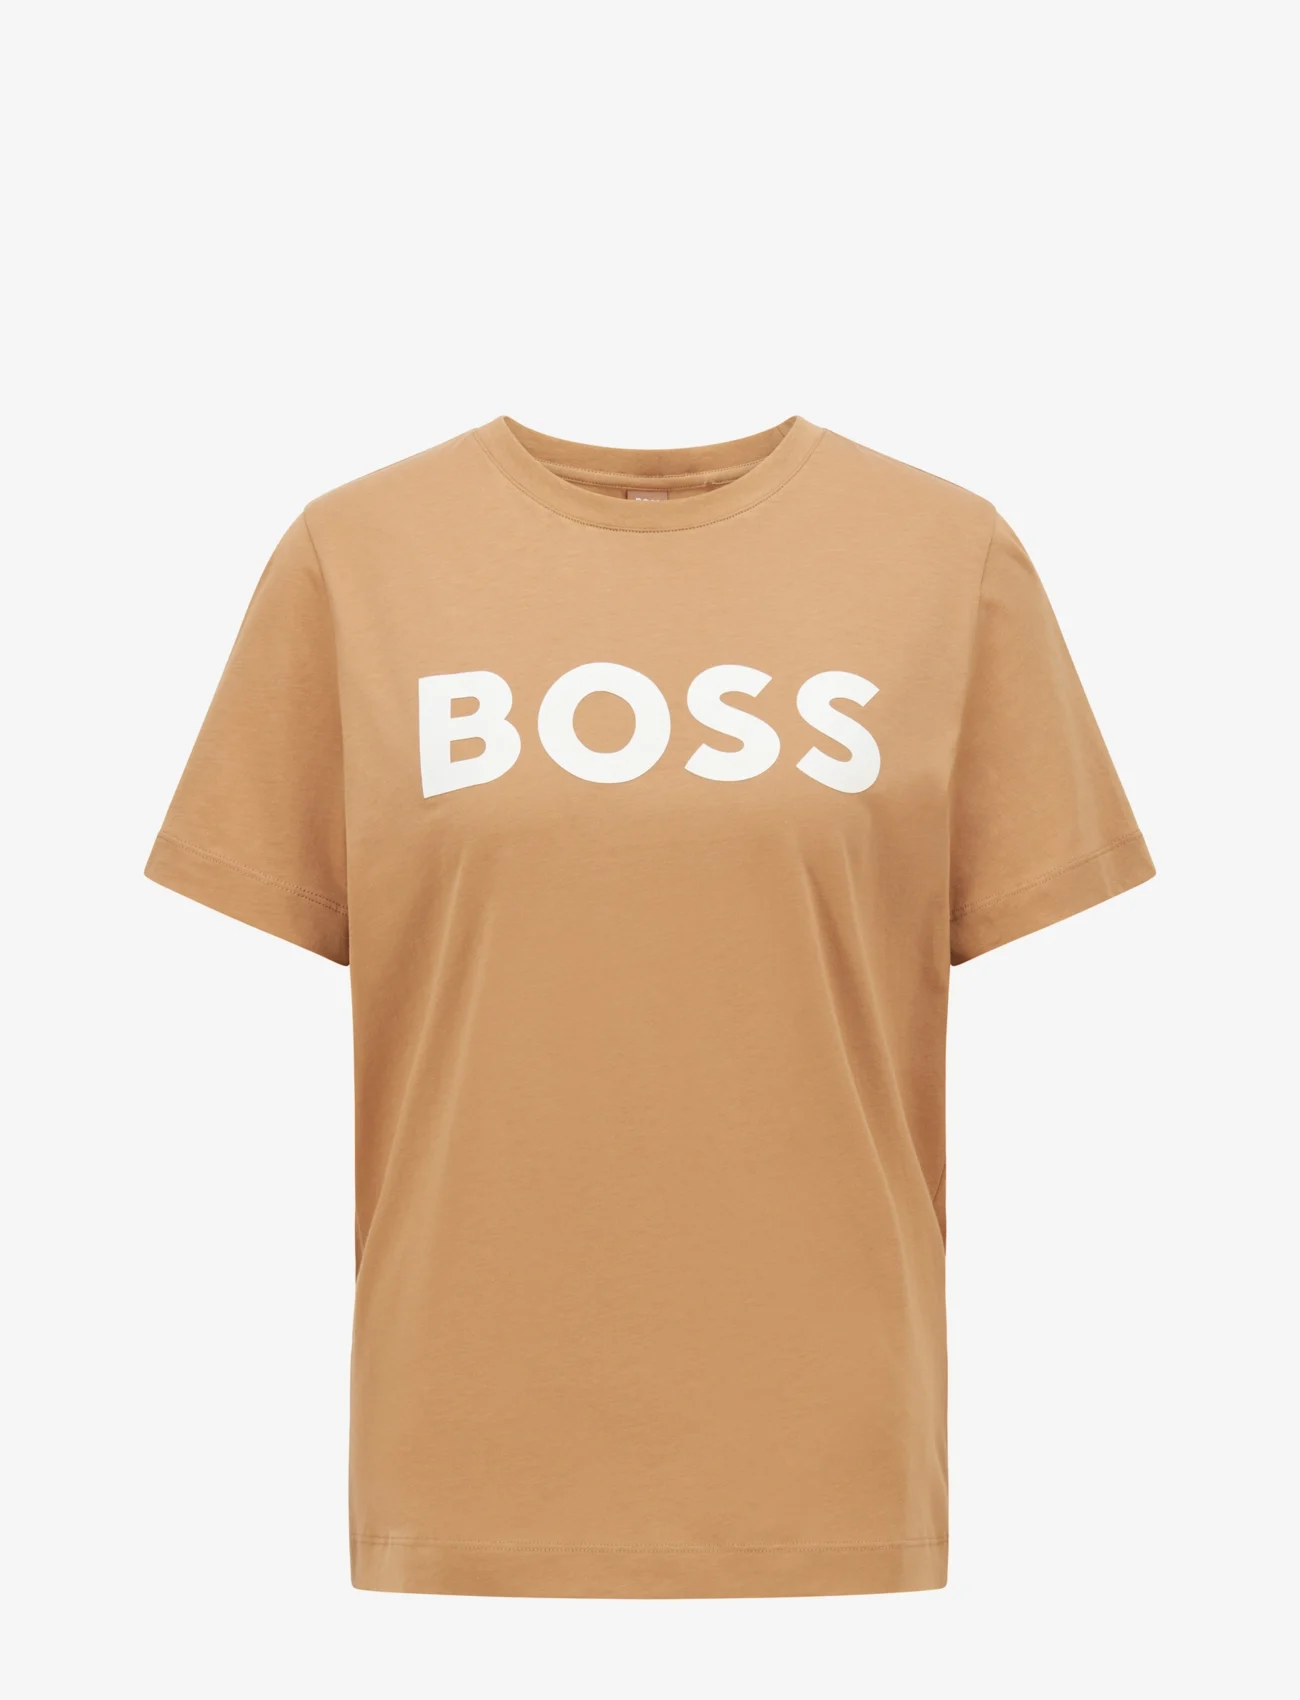 BOSS - Econte - marškinėliai - medium beige - 0